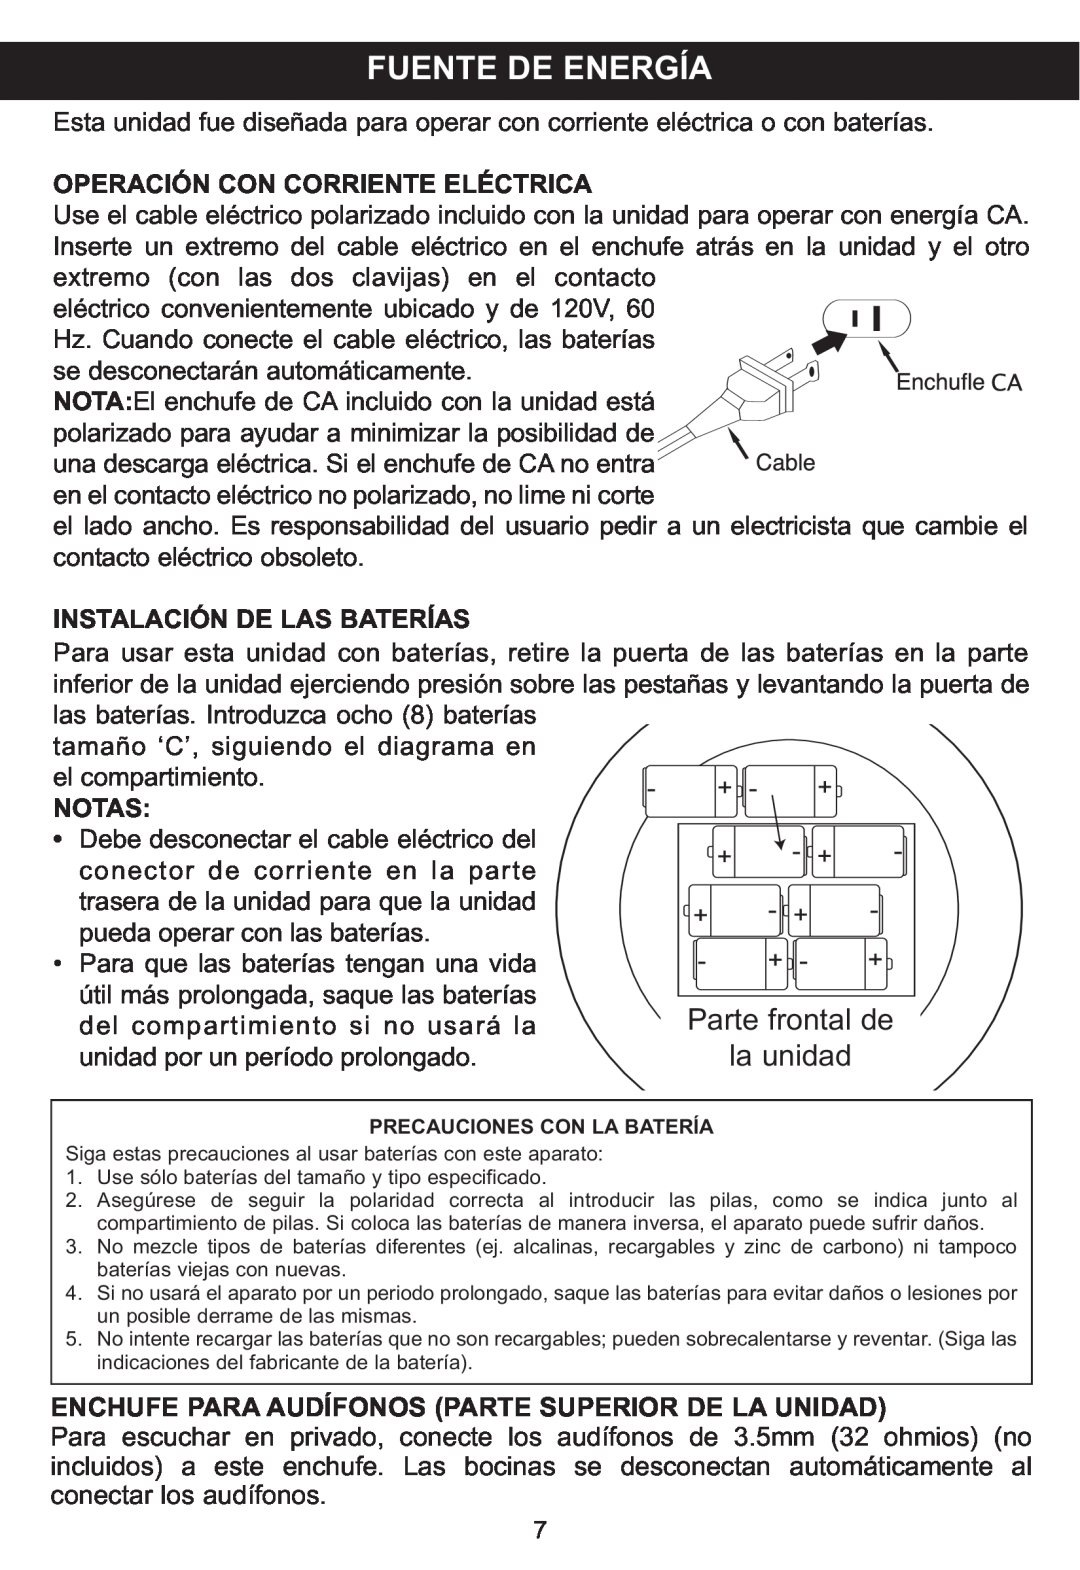 Memorex MP3848 manual Fuente De Energía, Parte frontal de, la unidad, Operación Con Corriente Eléctrica, Notas 